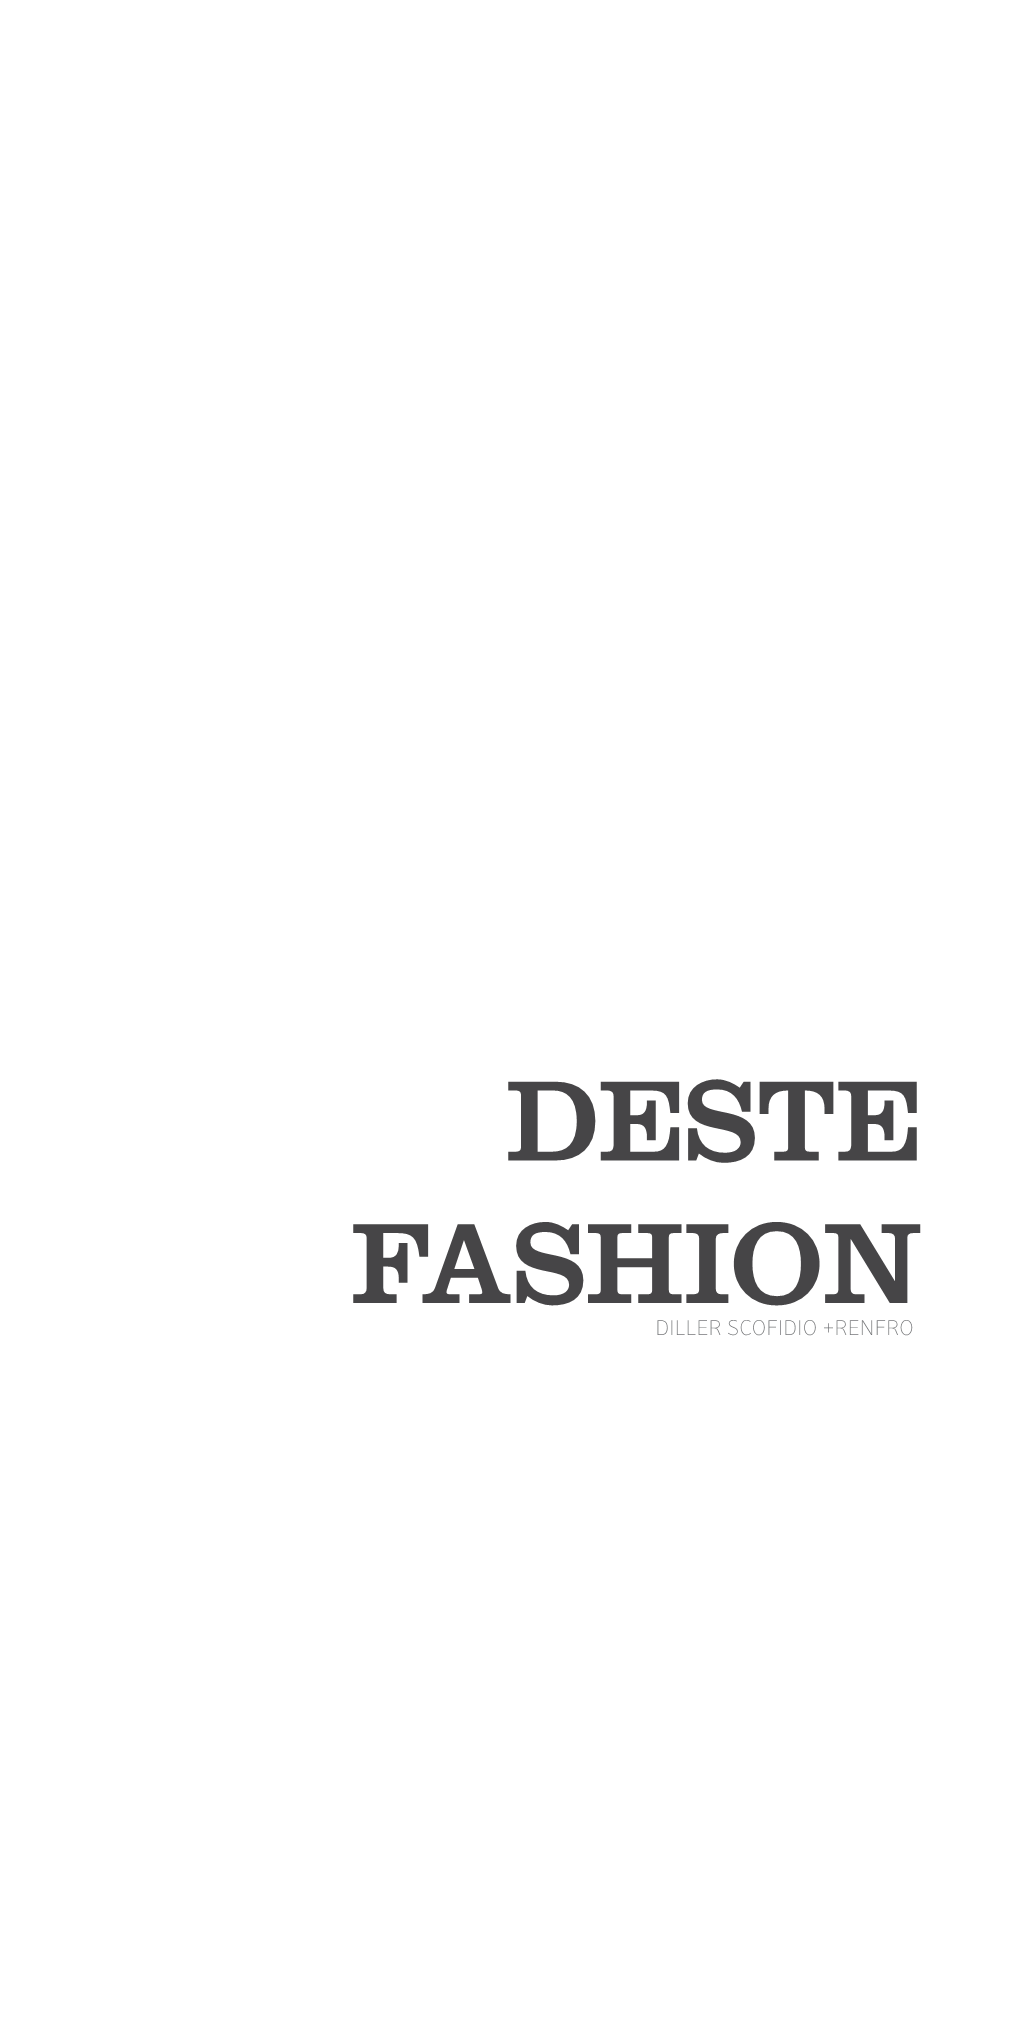 Deste Fashion Diller Scofidio +Renfro Contents